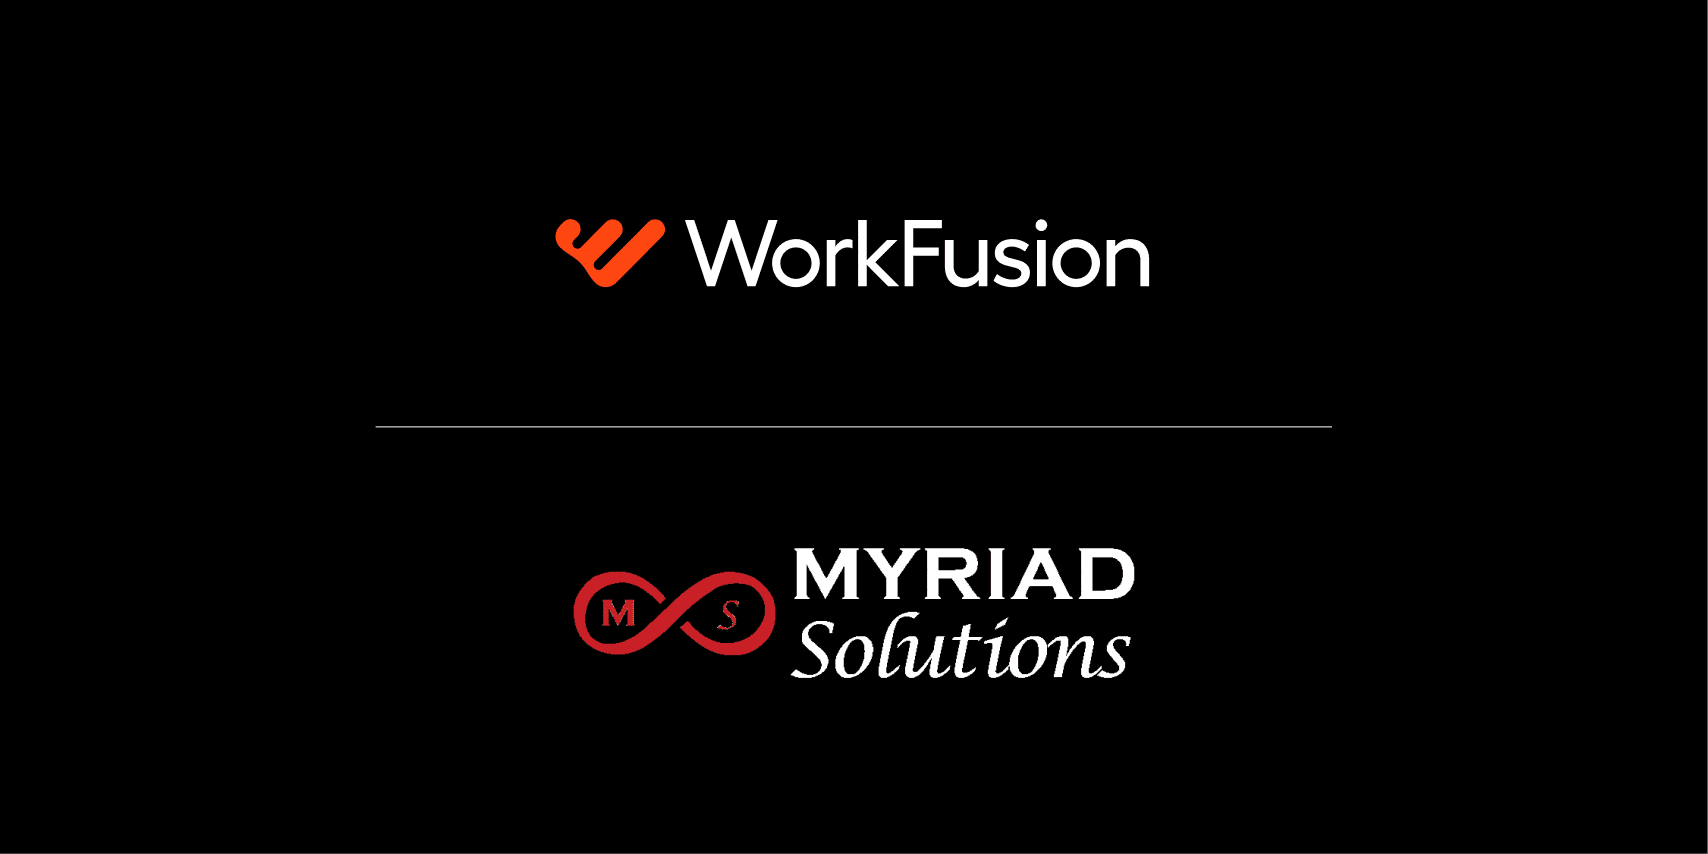 WorkFusion Myriad Solutions